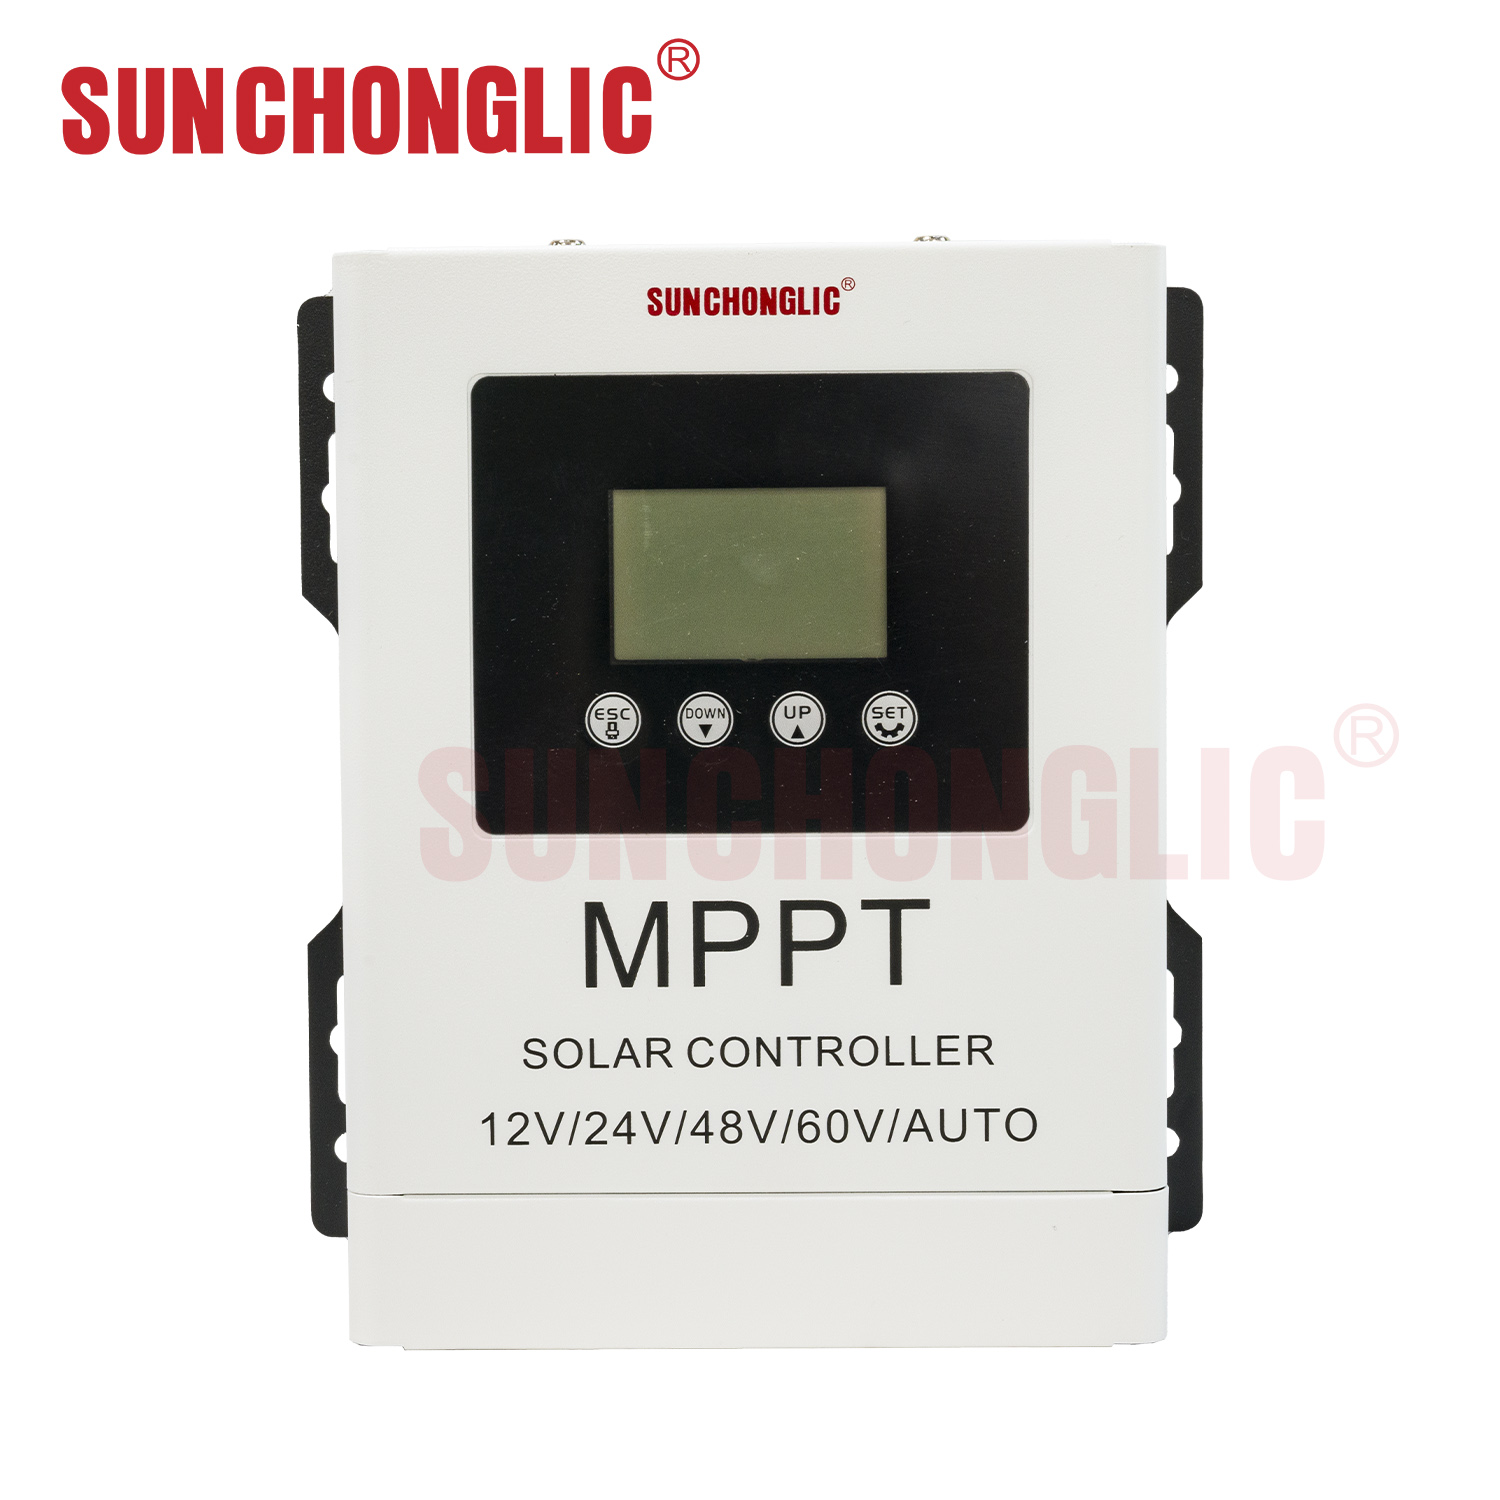 Sunchonglic mppt controller 12V 24V 48V 60V 40A mppt solar charging regulator solar controller 